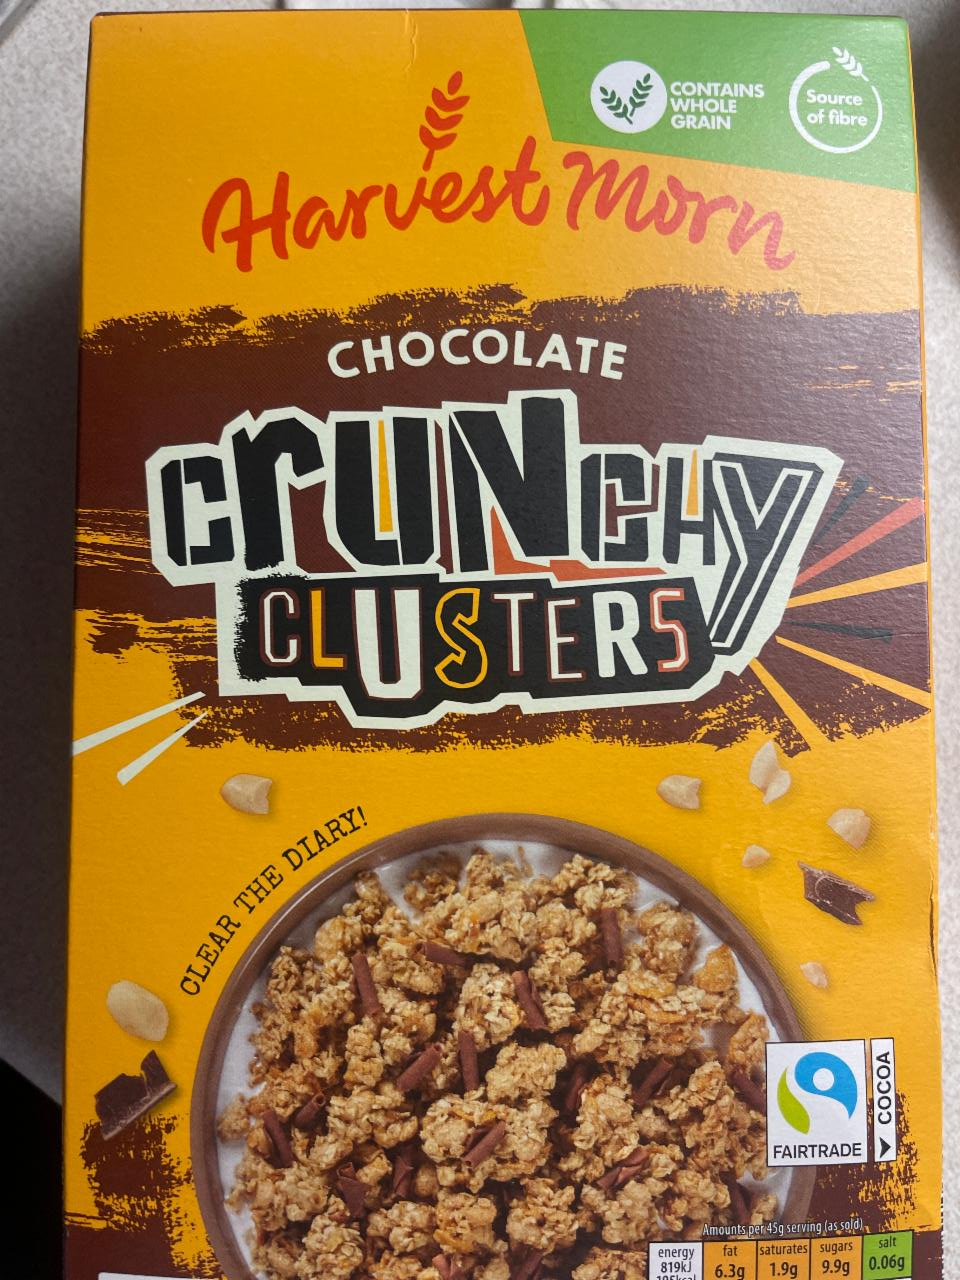 Fotografie - Chocolate Crunchy Cluster Harvest Morn